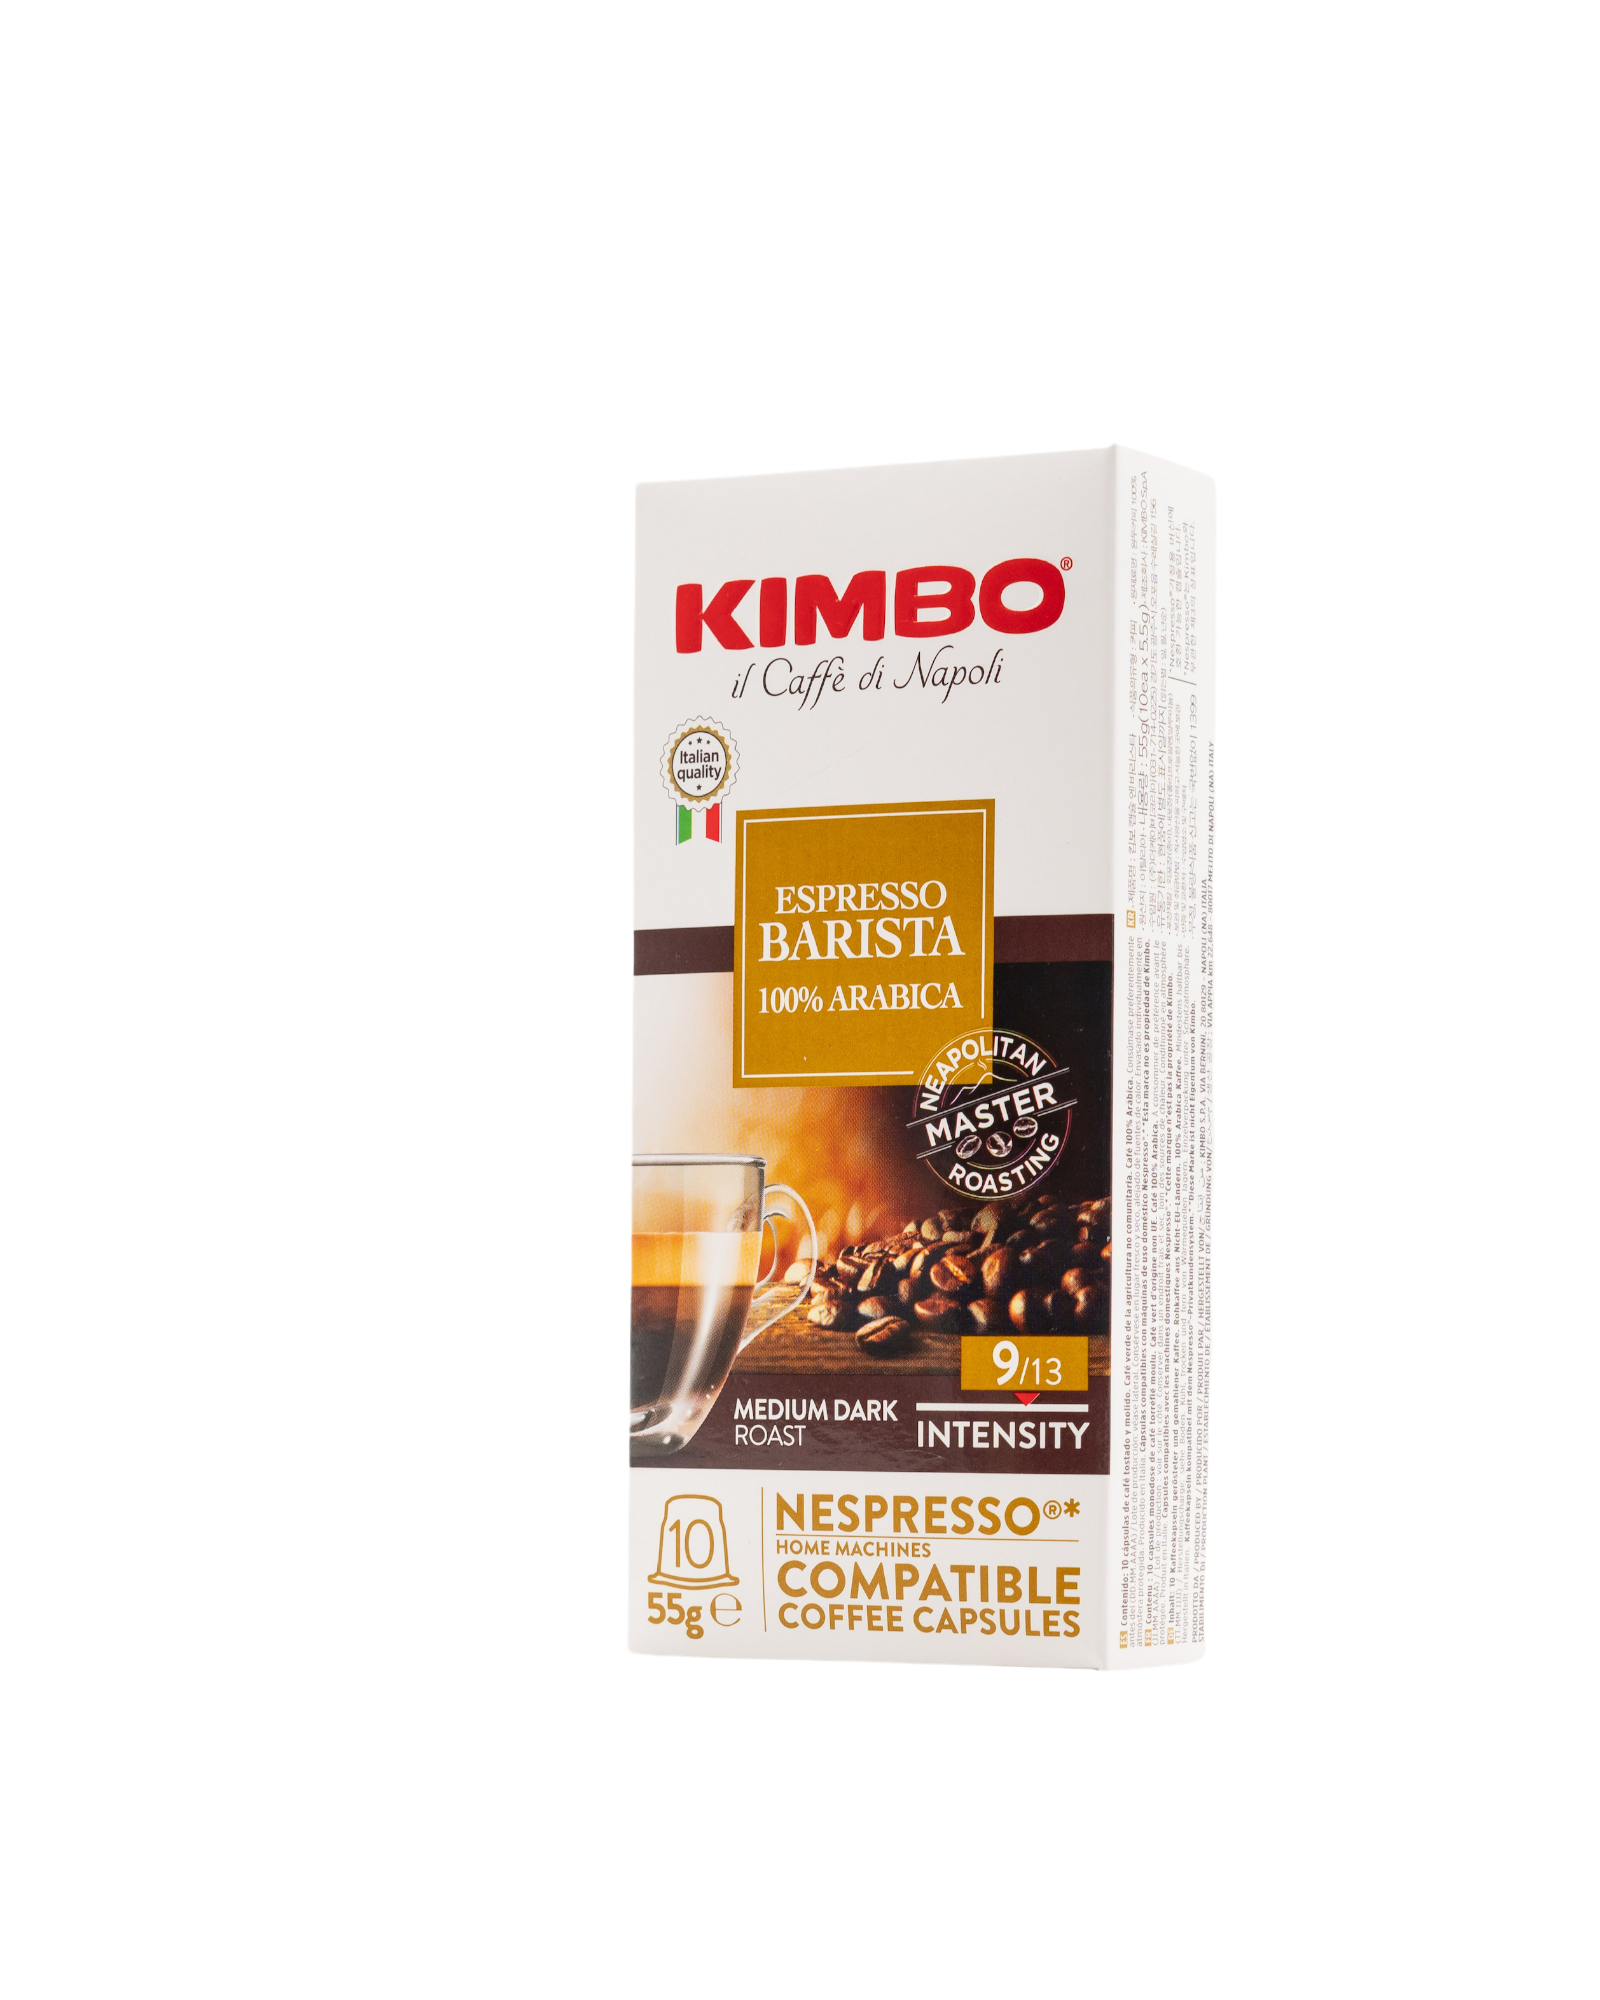 KIMBO - NC Lungo (10 capsules)-full case